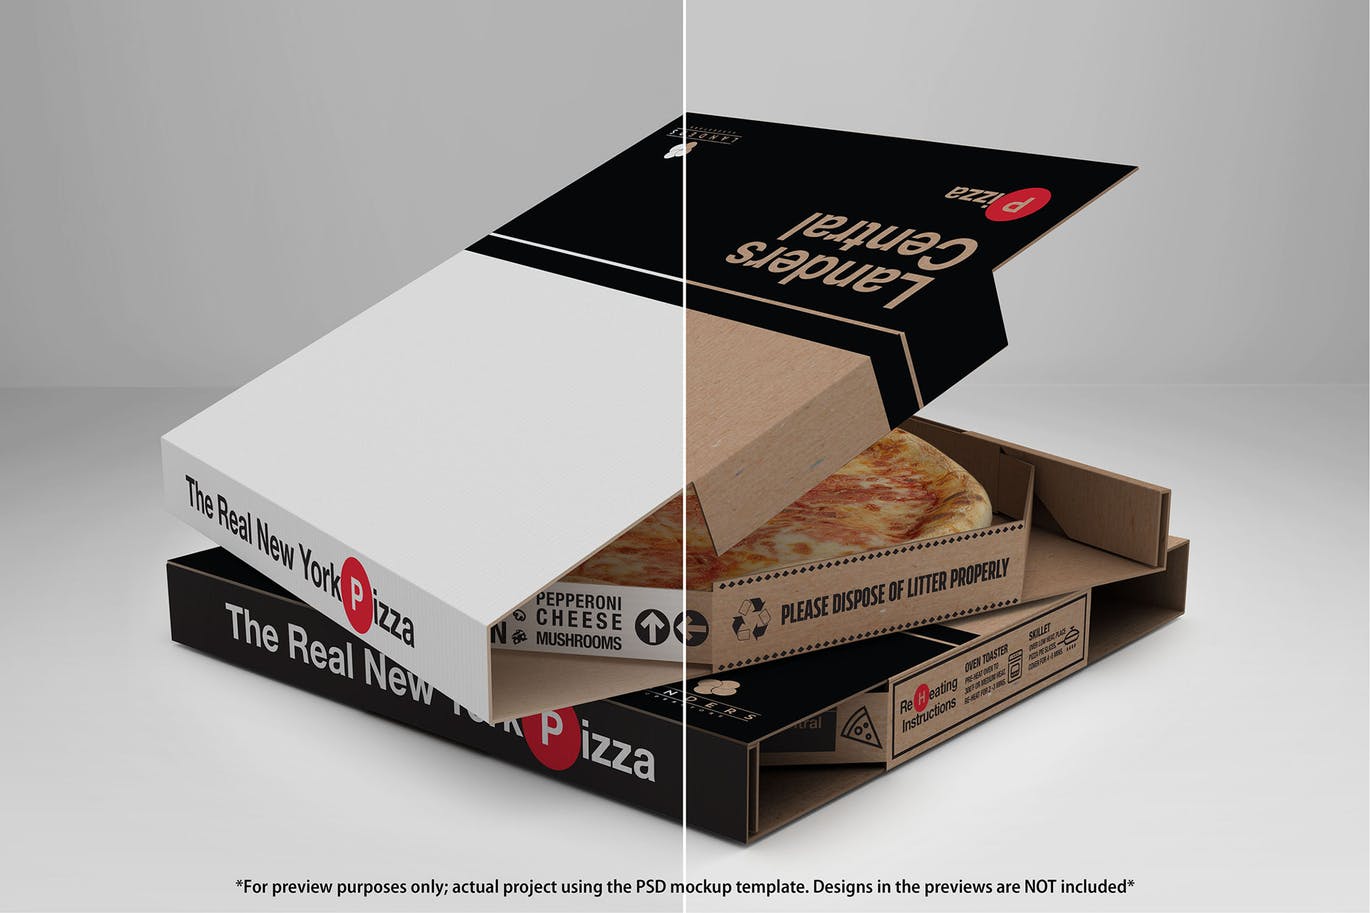 肯德基麦当劳KFC快餐外卖盒包装样机展示模型mockups大集合插图(5)